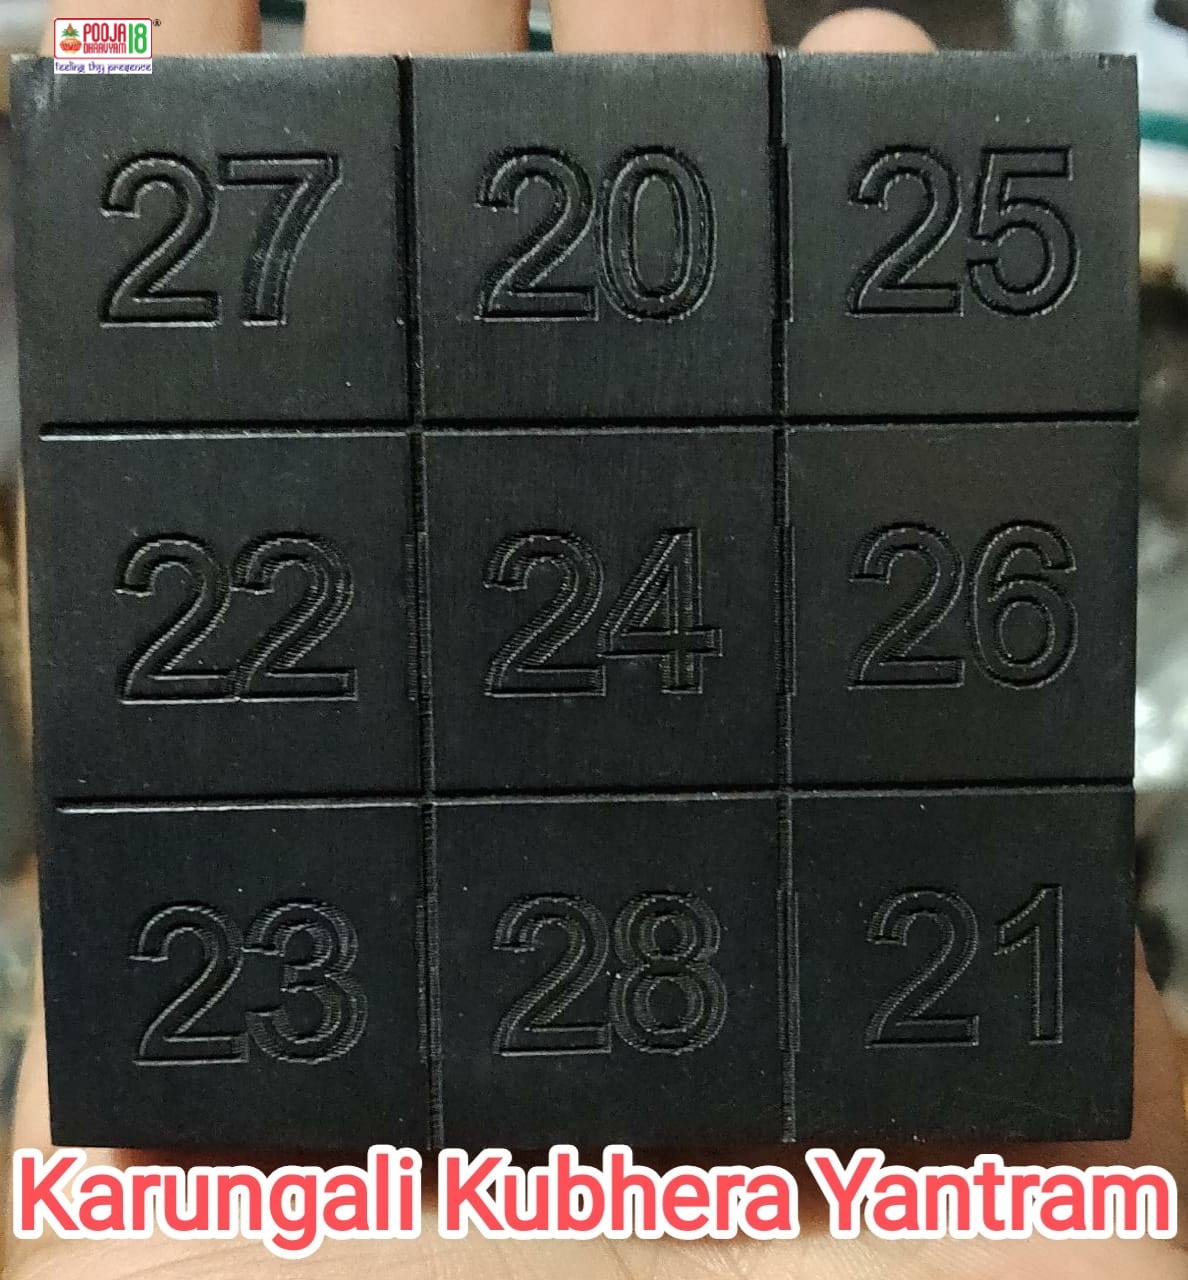 Karungali Kubhera Yantram